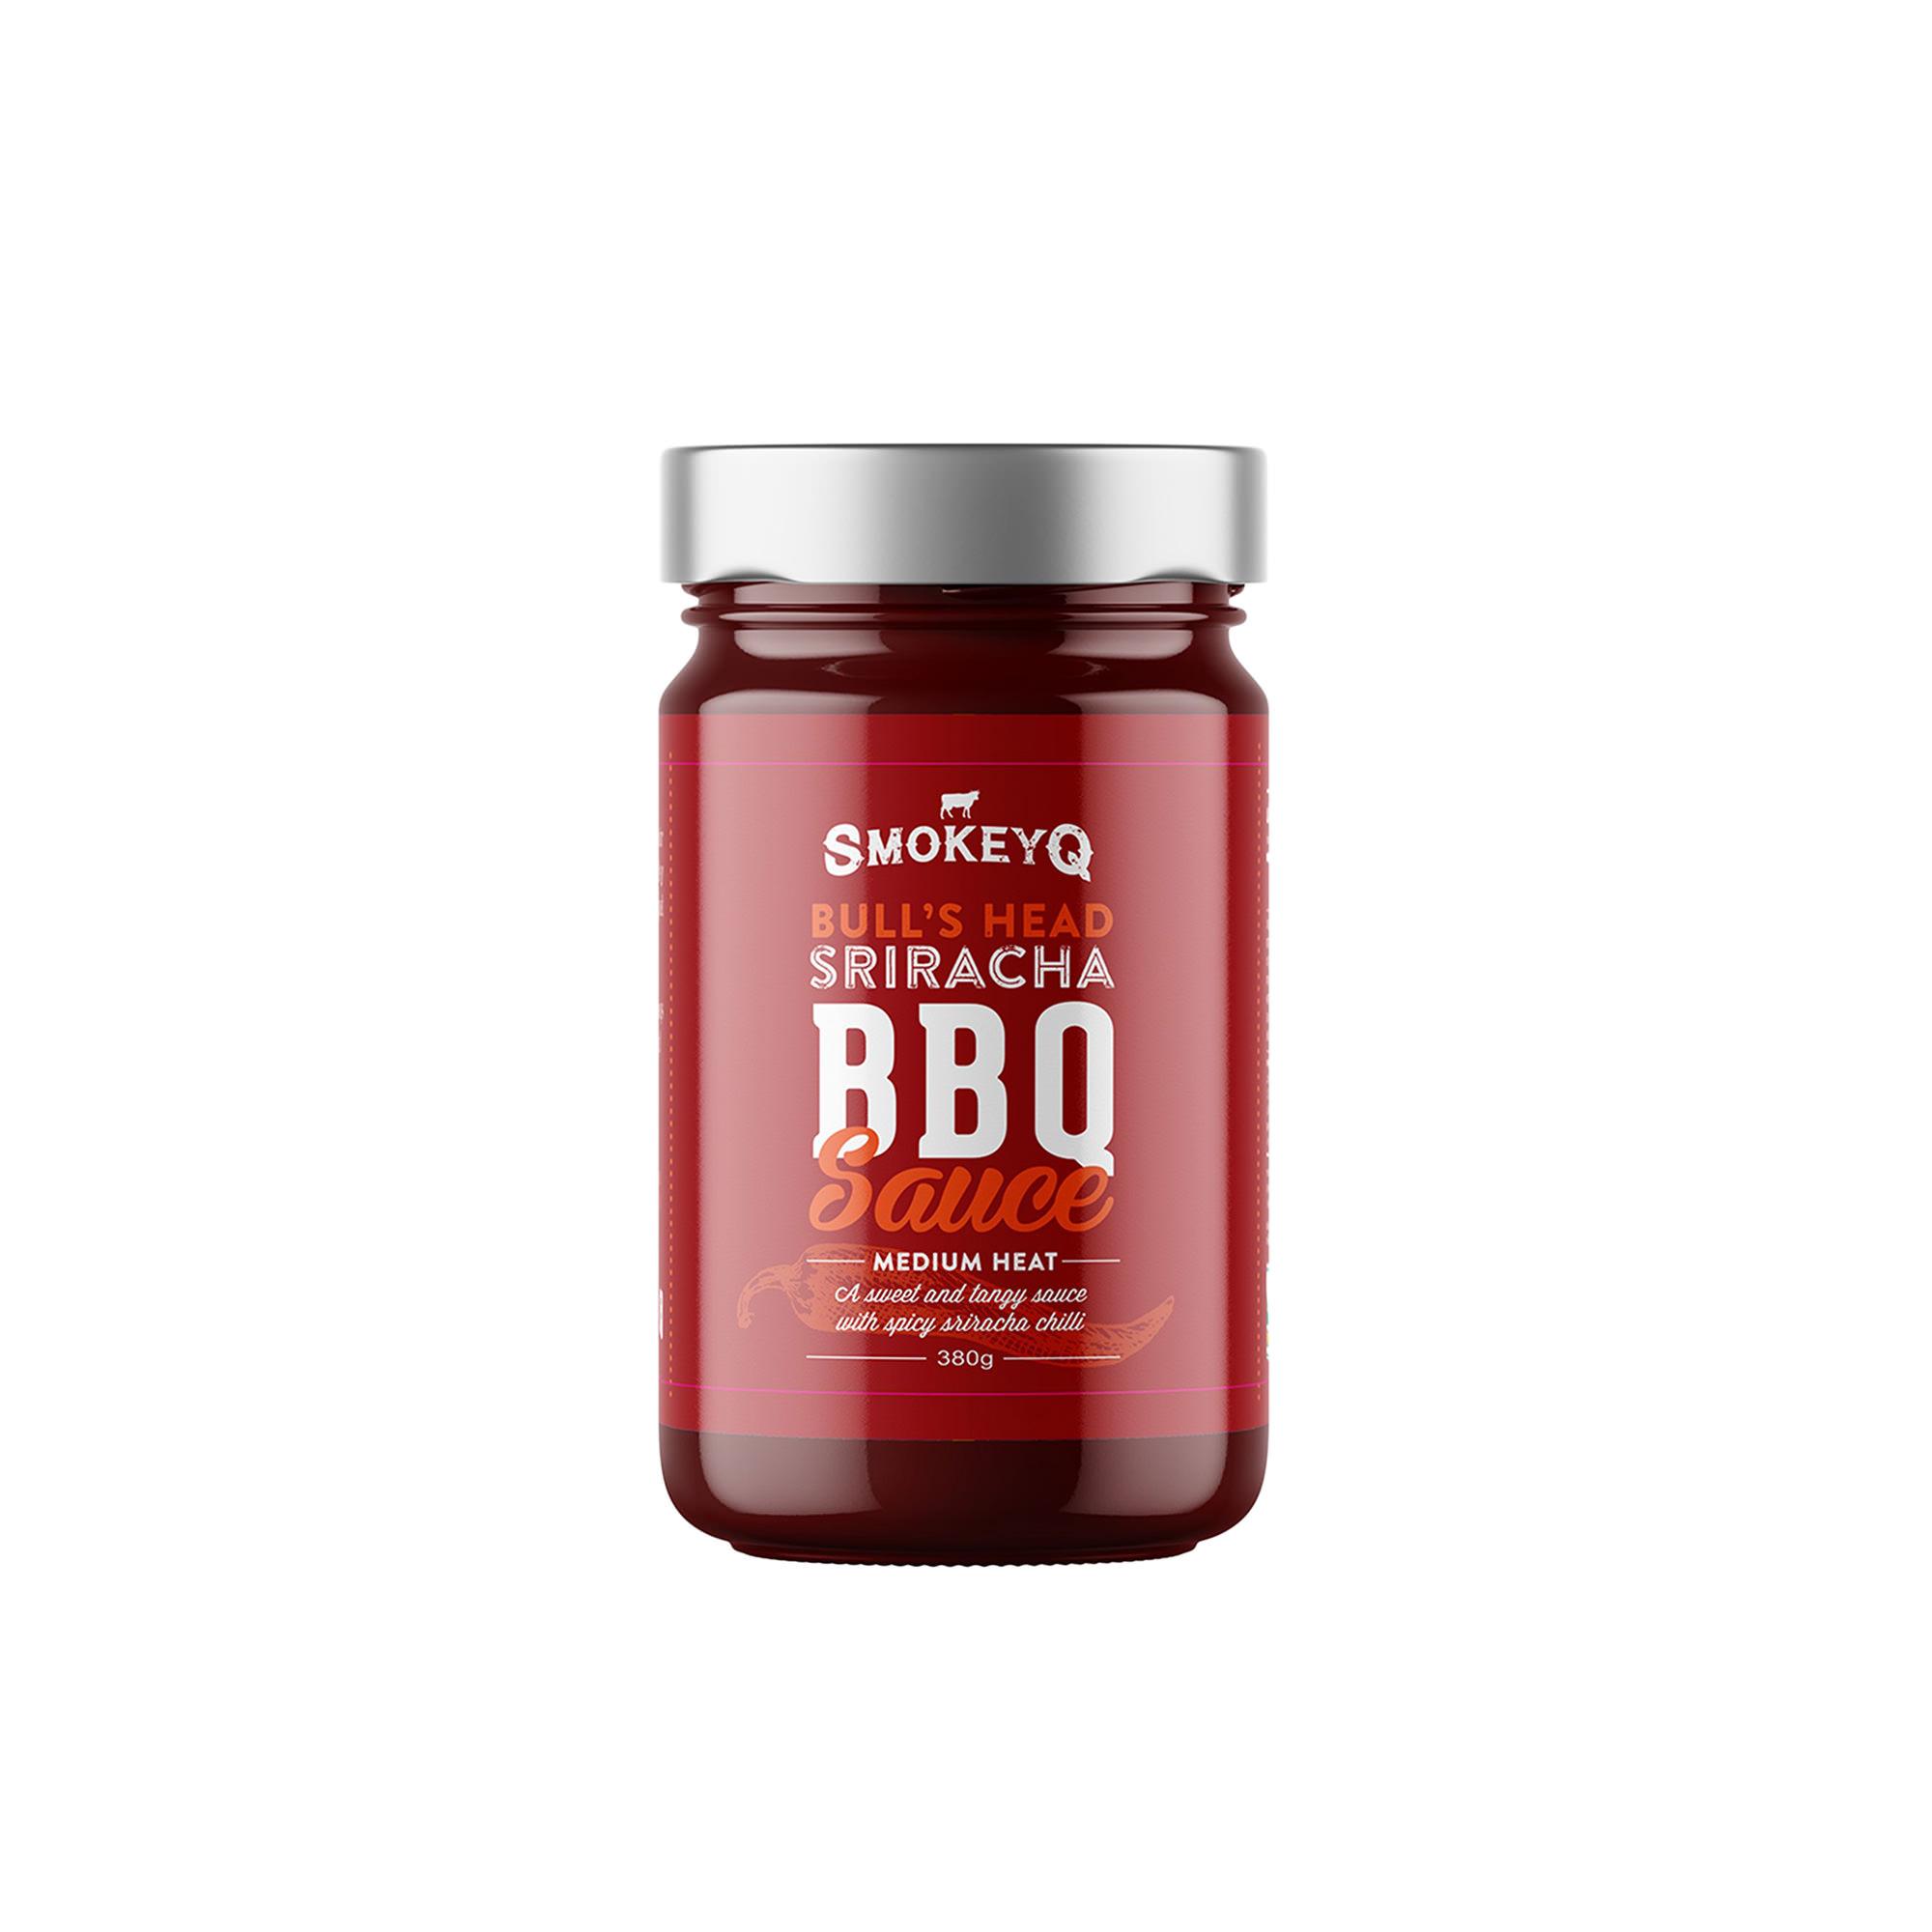 Smokey Q Sriracha BBQ Sauce 380g Image 1